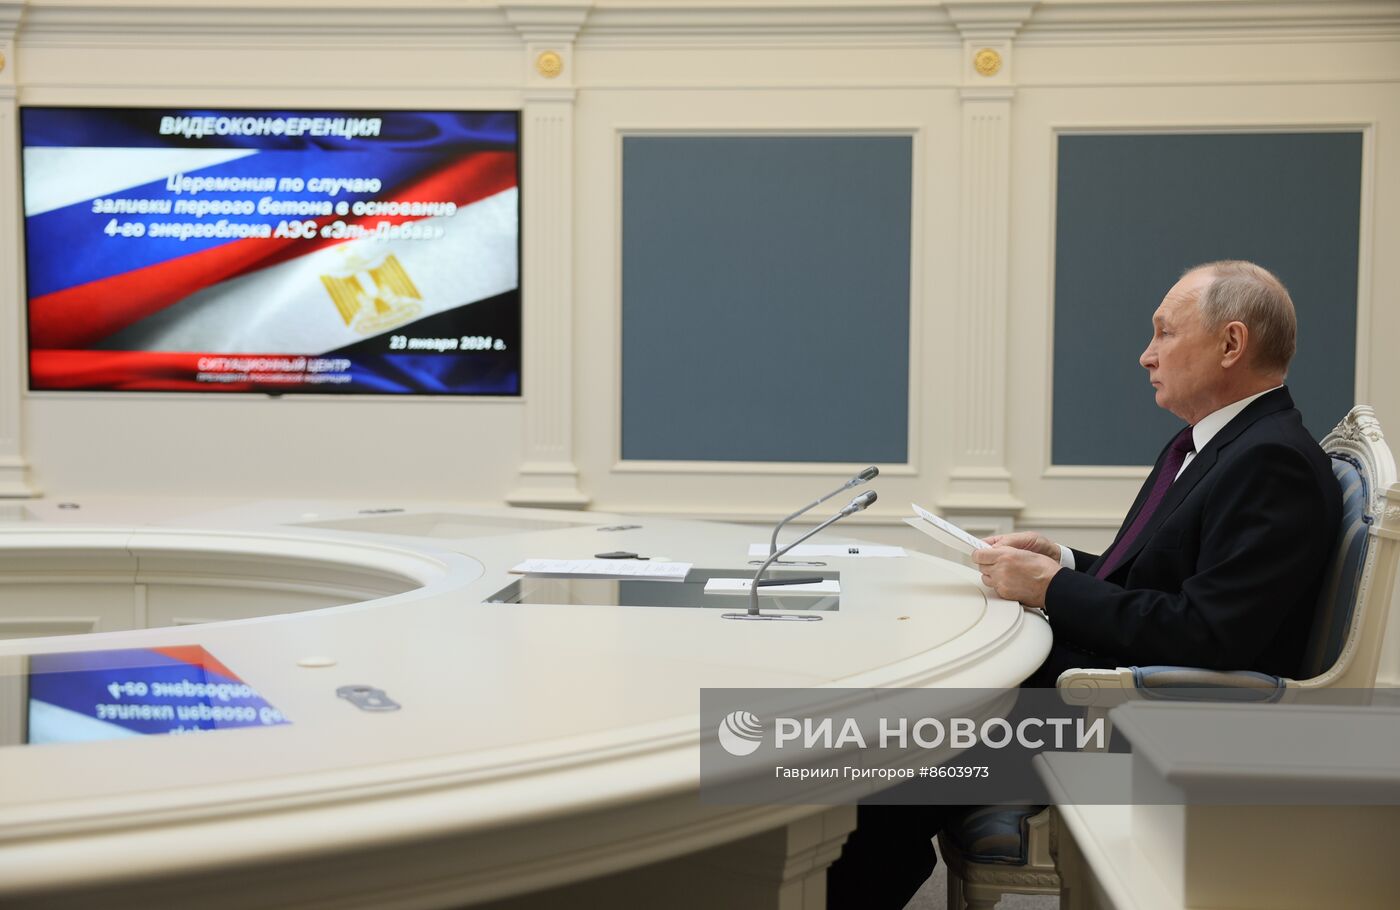 Президент РФ В. Путин принял участие в церемонии по случаю начала заливки бетона в основание энергоблока №4 египетской АЭС "Эль-Дабаа"